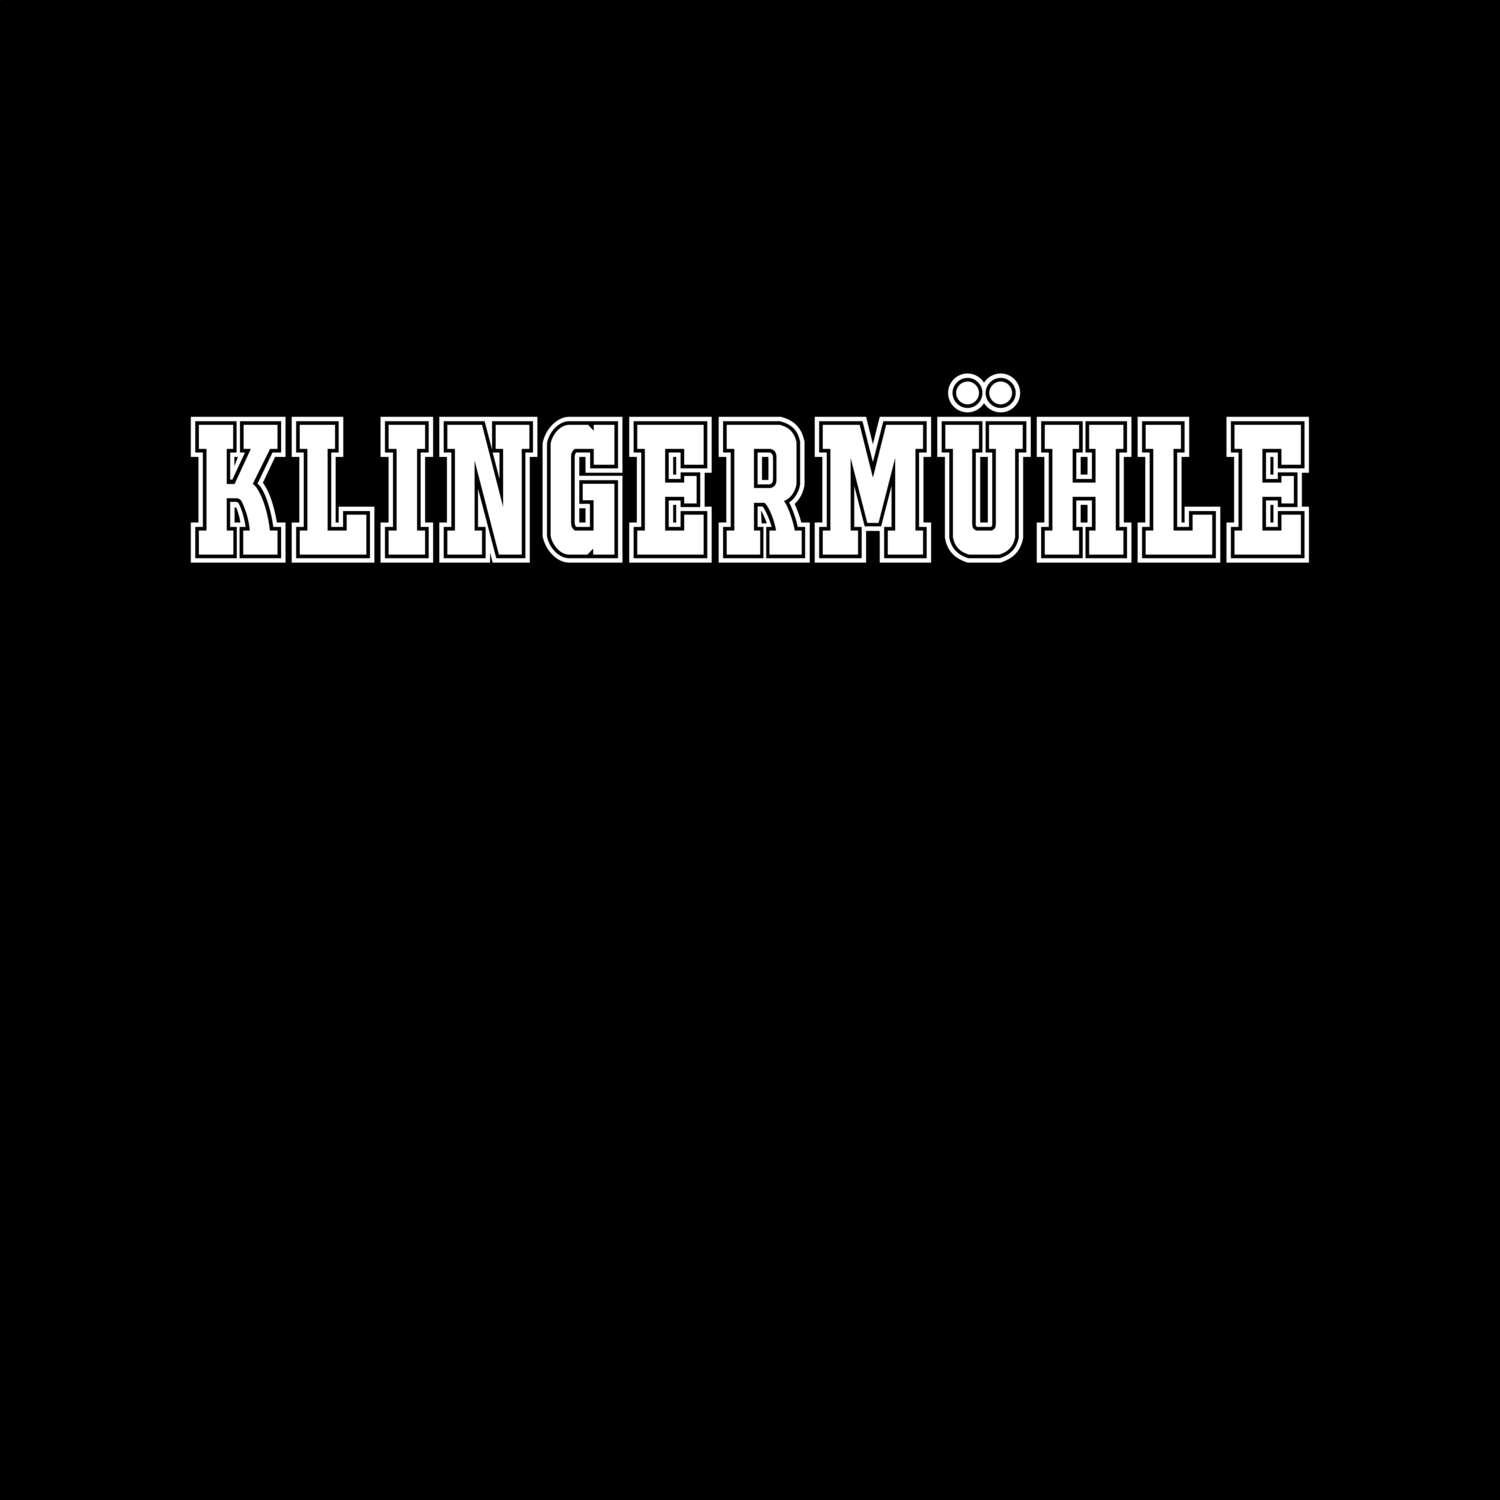 Klingermühle T-Shirt »Classic«